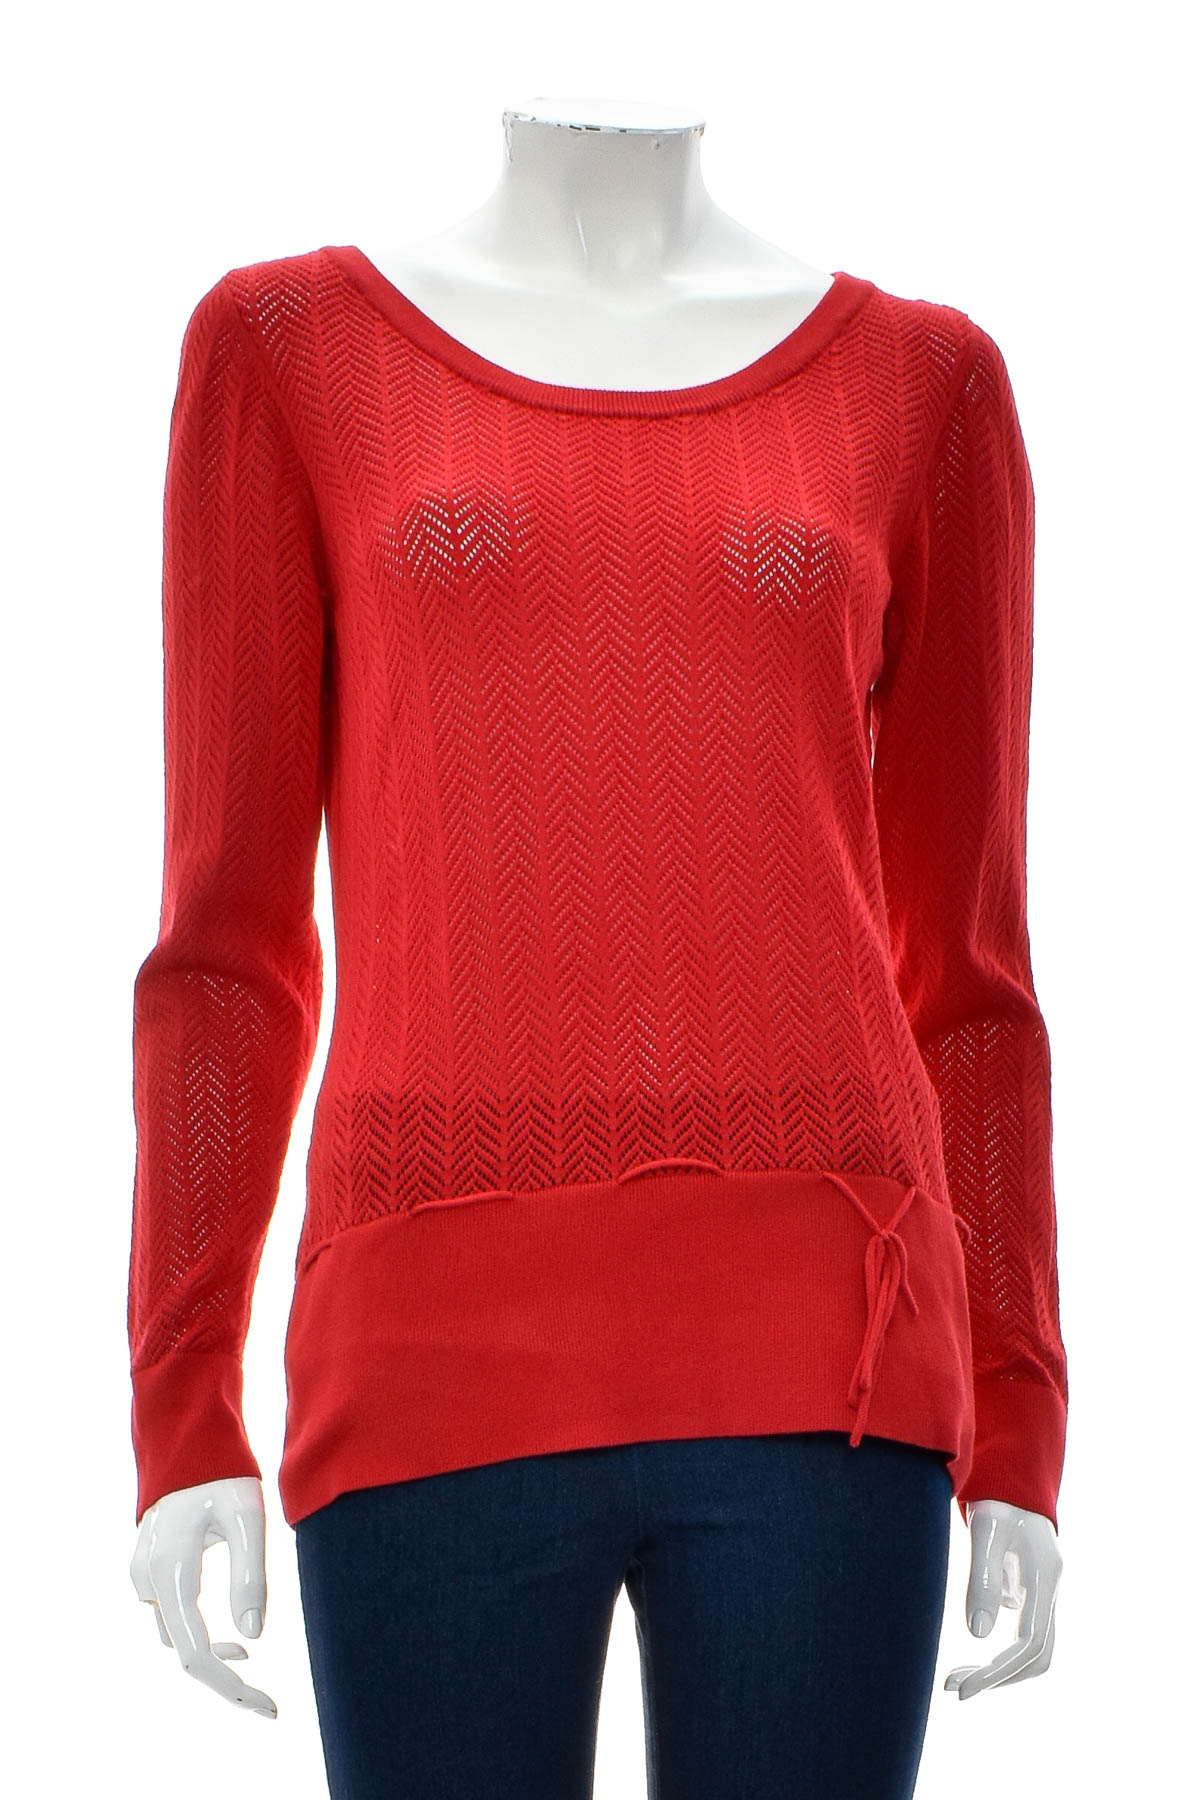 Women's sweater - Jbc - 0